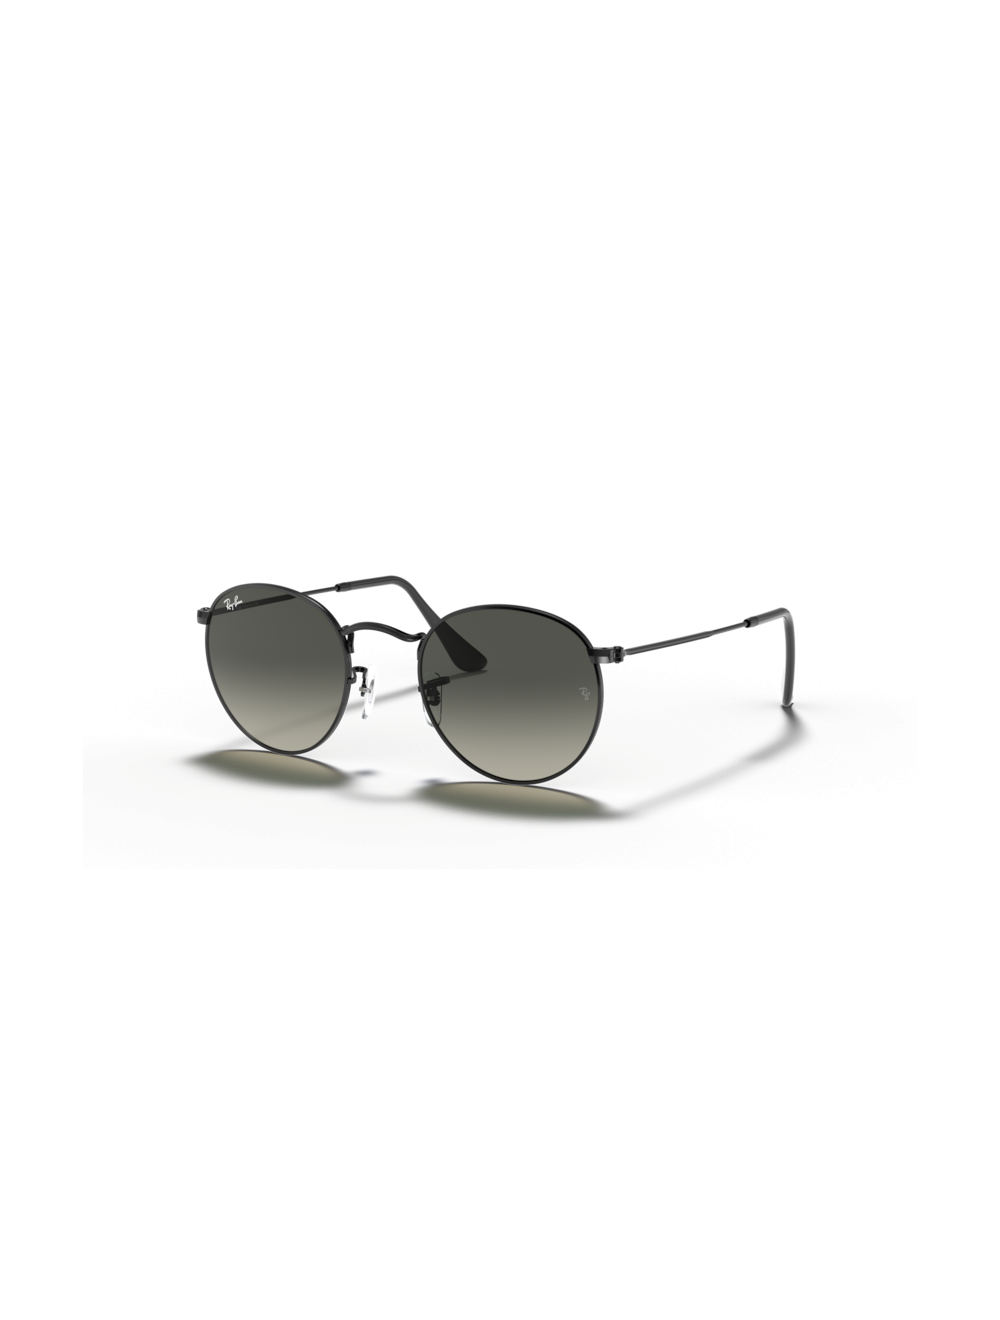 Ray Ban Round Metal RB3447 019/30 mirrored sunglasses - Otticamauro.biz